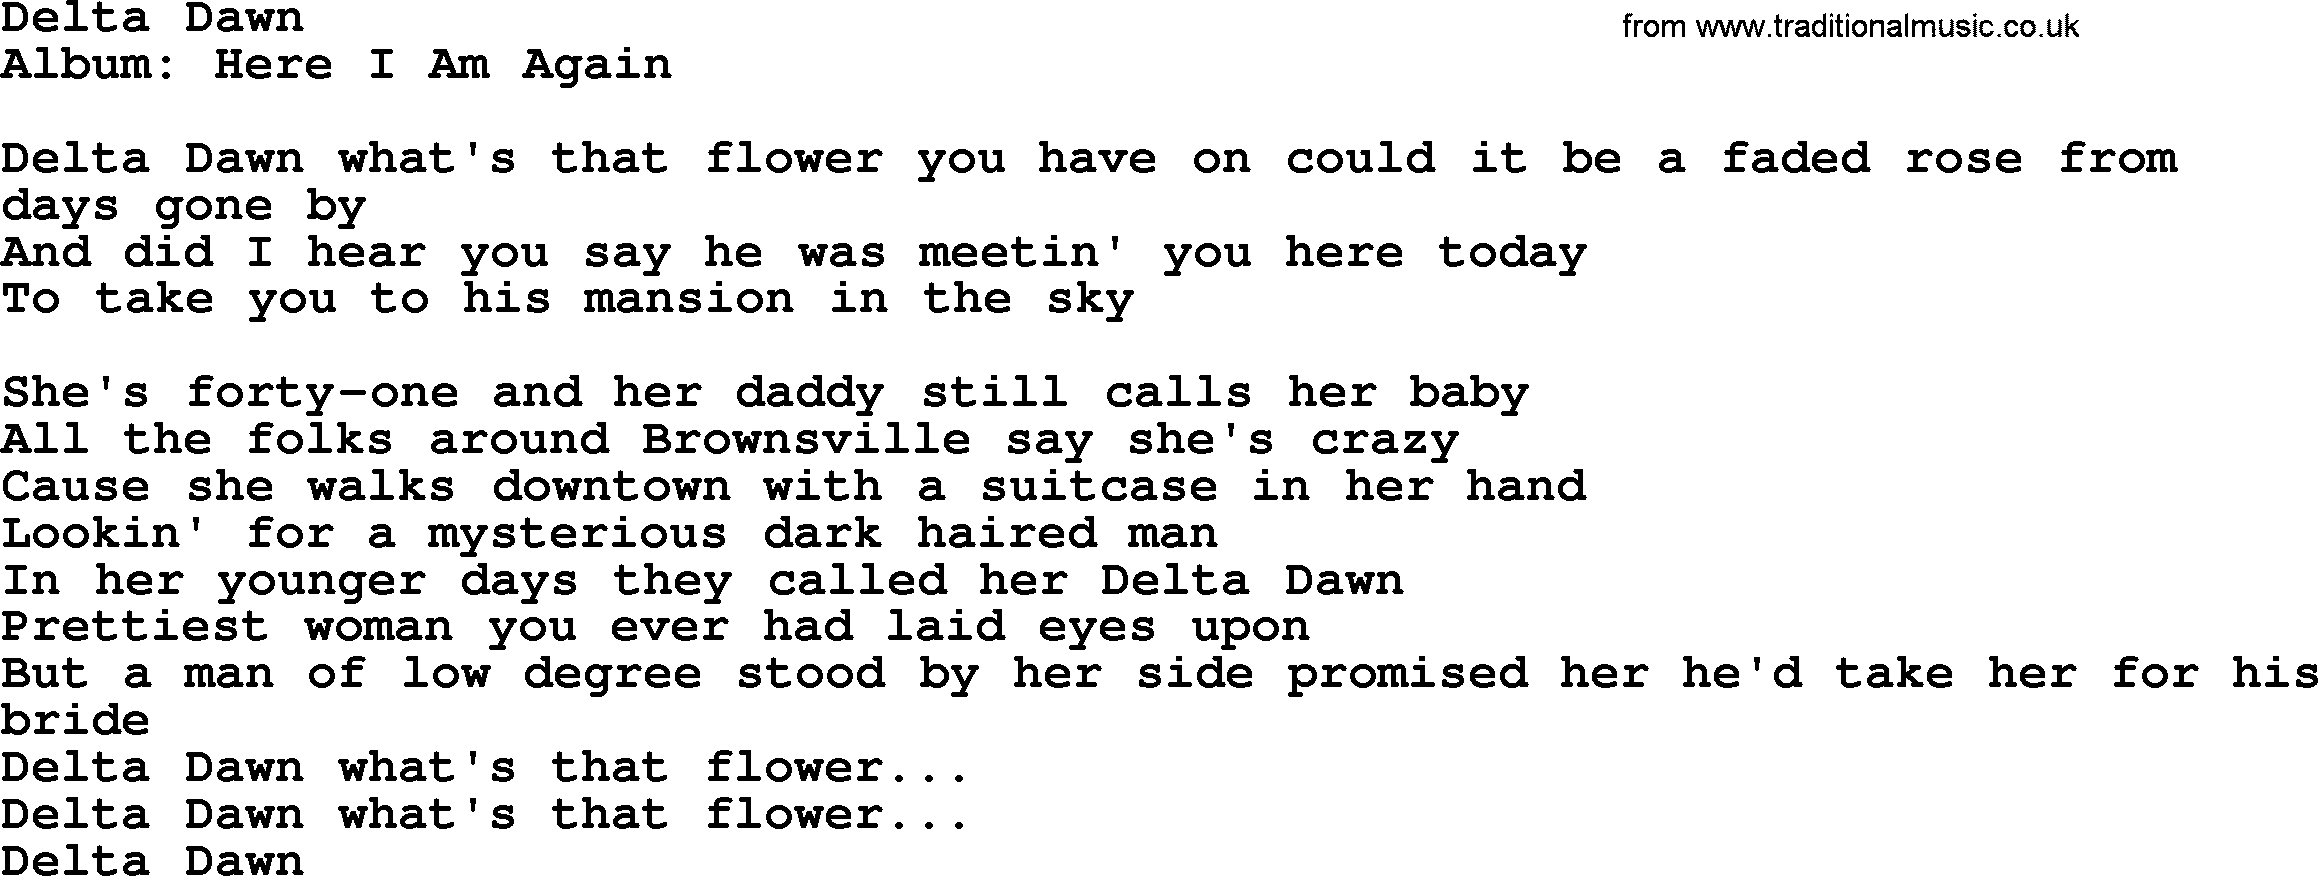 Loretta Lynn song: Delta Dawn lyrics